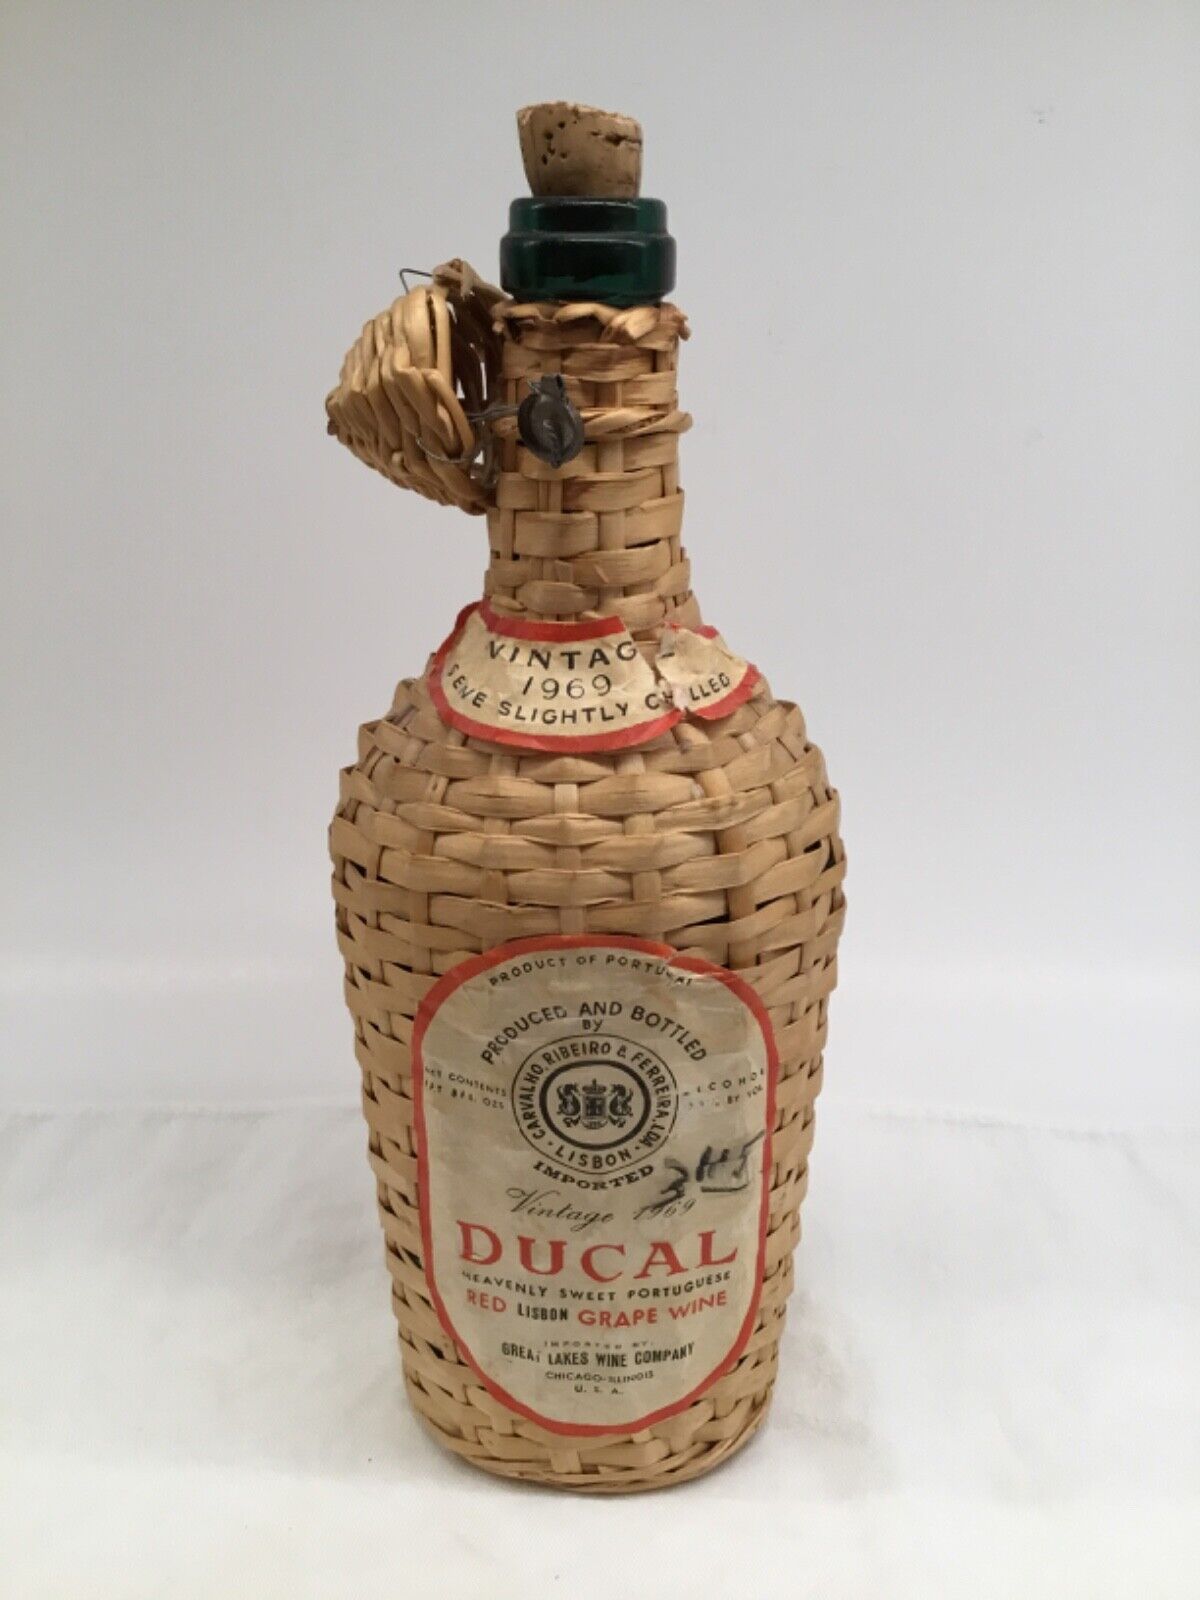 Vintage Wicker Wrapped 1969 Ducal Portuguese Red Lisbon Grape Wine Bottle